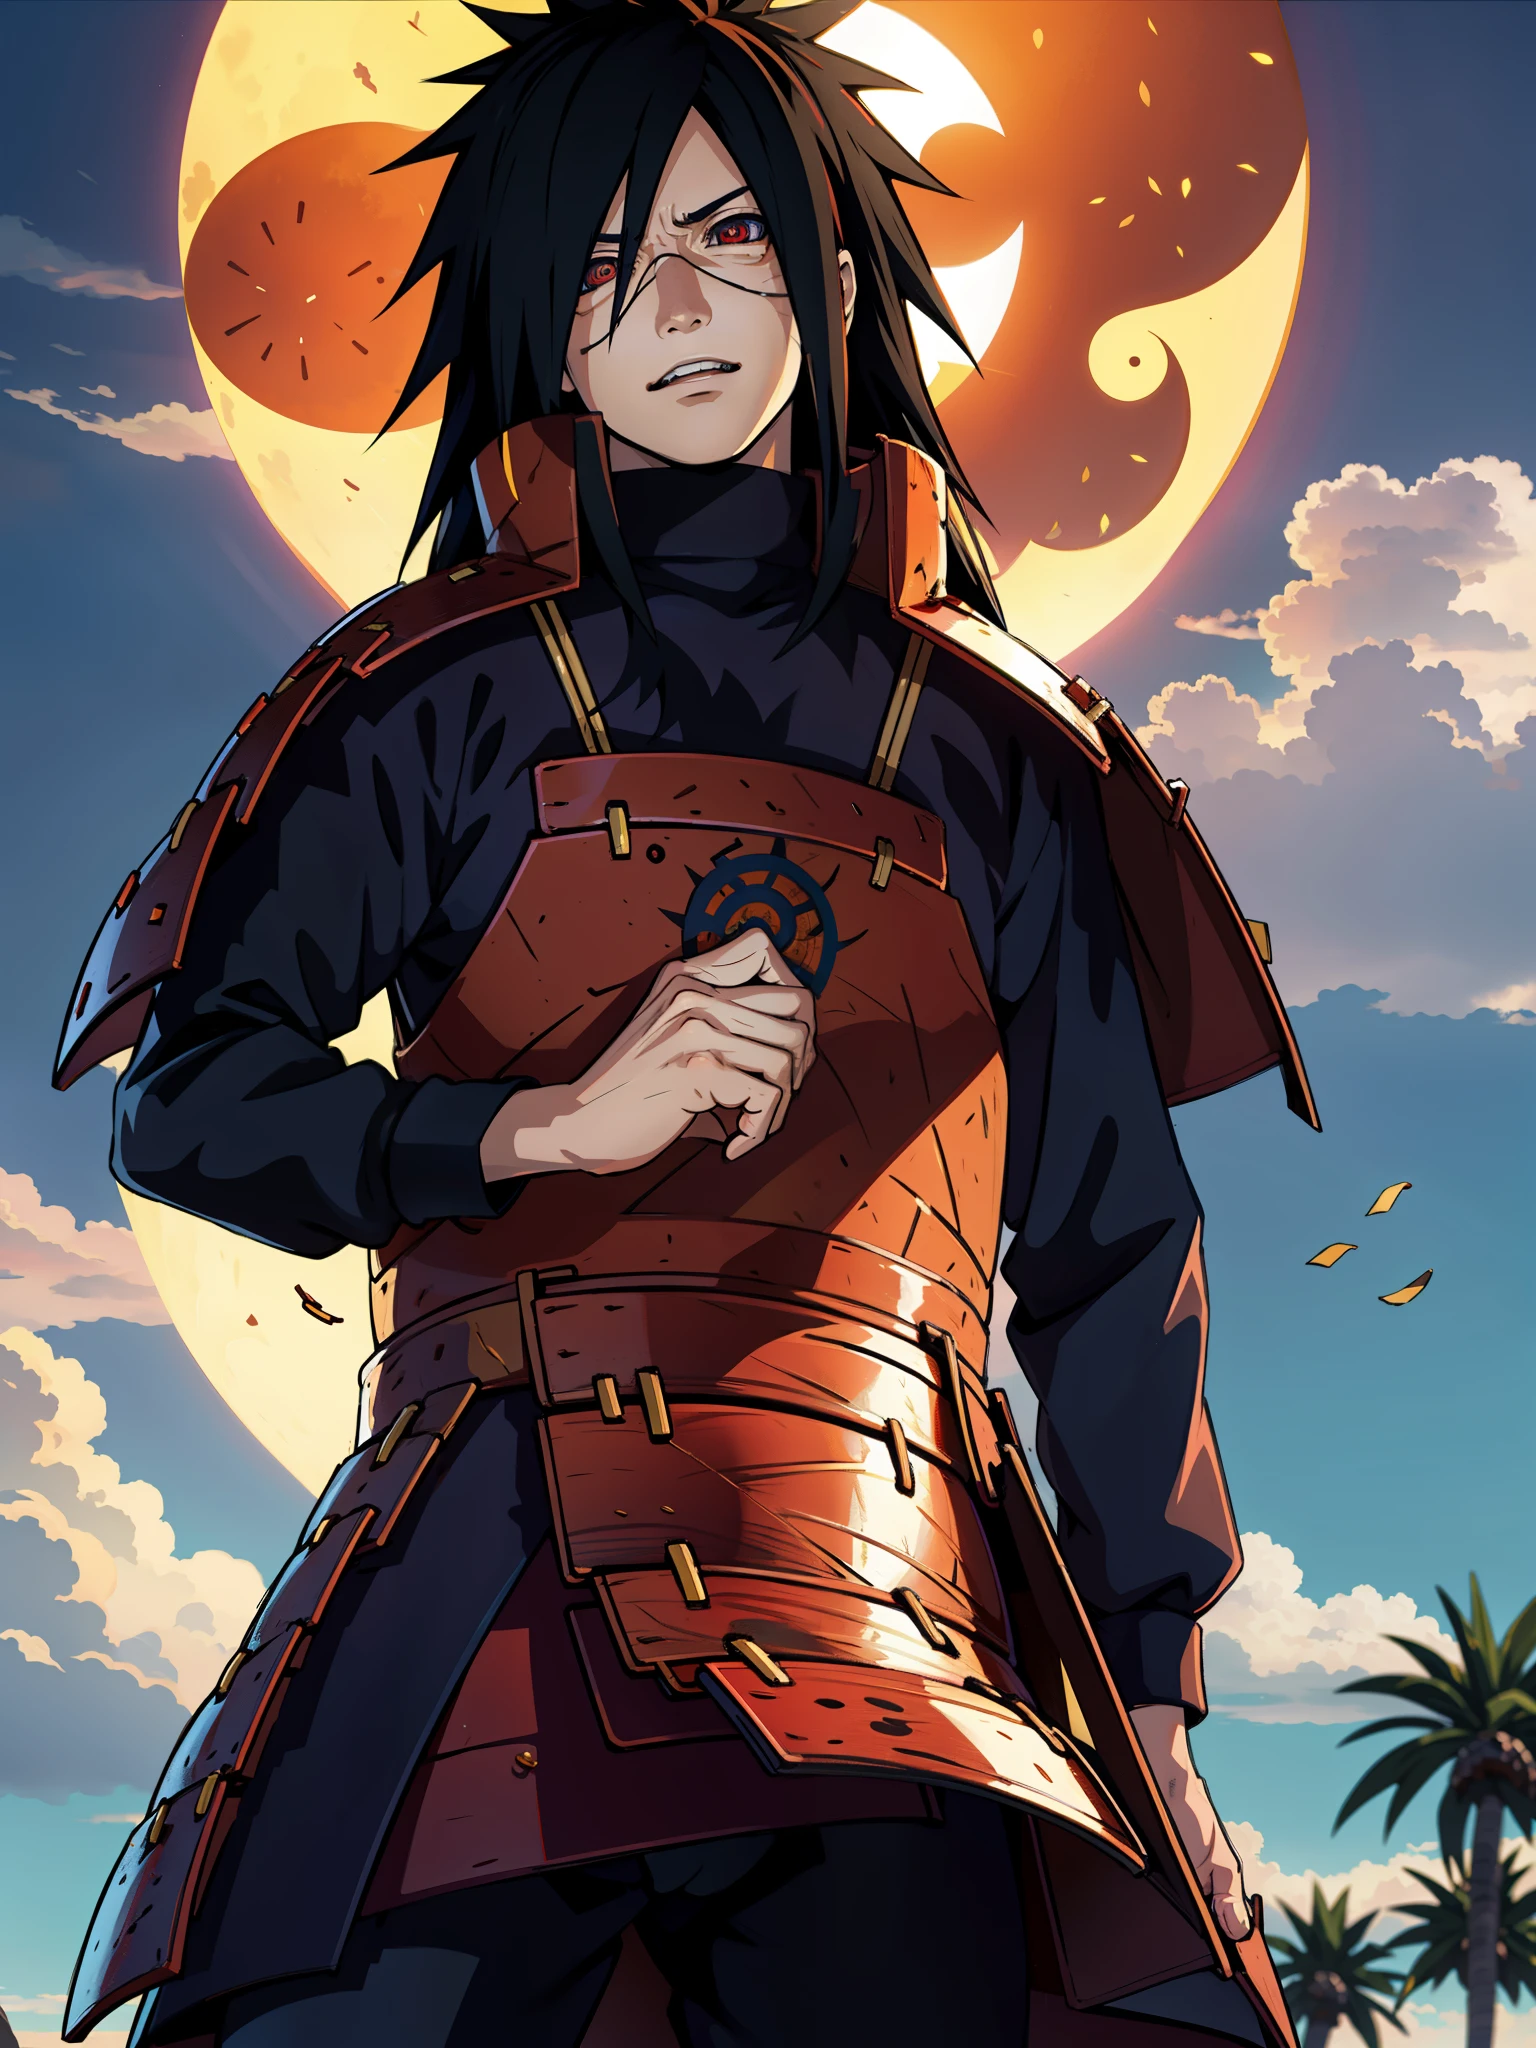 1 homem, Uchiha Madara do anime Naruto, com longos cabelos negros e olhos vermelhos penetrantes. Ele tem uma aparência bonita e confiante, Com um sorriso cativante no rosto.

Ele está vestindo um conjunto de roupas vermelhas que são intrinsecamente detalhadas, apresentando o artesanato de alta qualidade e textura realista. O tecido flui graciosamente, acentuando cada movimento seu.

A cena se passa em um cenário vibrante de cidade praiana, com o sol brilhando intensamente e lançando um brilho quente em Madara. A cidade está fervilhando de vida, com palmeiras balançando suavemente com a brisa e pessoas aproveitando o tempo na praia. O mar azul claro se estende até onde a vista alcança, criando um ambiente tranquilo e sereno.

A qualidade da imagem é de extrema importância, com foco em alcançar a melhor resolução possível. Os detalhes são ultra-detalhados, capturando cada fio de cabelo, cada ruga na roupa, e cada expressão sutil no rosto de Madara. A imagem pretende ser realista e fotorrealista, imergindo o espectador no mundo de Naruto.

Em termos de estilo de arte, a imagem combina a essência do anime e dos artistas conceituais, combinando a natureza dinâmica e expressiva do anime com a atenção meticulosa aos detalhes vista na arte conceitual. A paleta de cores geral é vibrante e vívida, com um toque de calor para destacar a presença de Madara.

A iluminação da imagem acentua as características de Madara, lançando sombras que adicionam profundidade e dimensão ao seu rosto. A luz do sol o banha em uma suave, brilho dourado, realçando ainda mais sua aparência marcante.

Geral, o prompt visa retratar Uchiha Madara de uma maneira realista e cativante, mostrando suas características icônicas e personalidade. Procura criar uma imagem impressionante que capture a essência da série Naruto e ao mesmo tempo mostre o talento do artista..